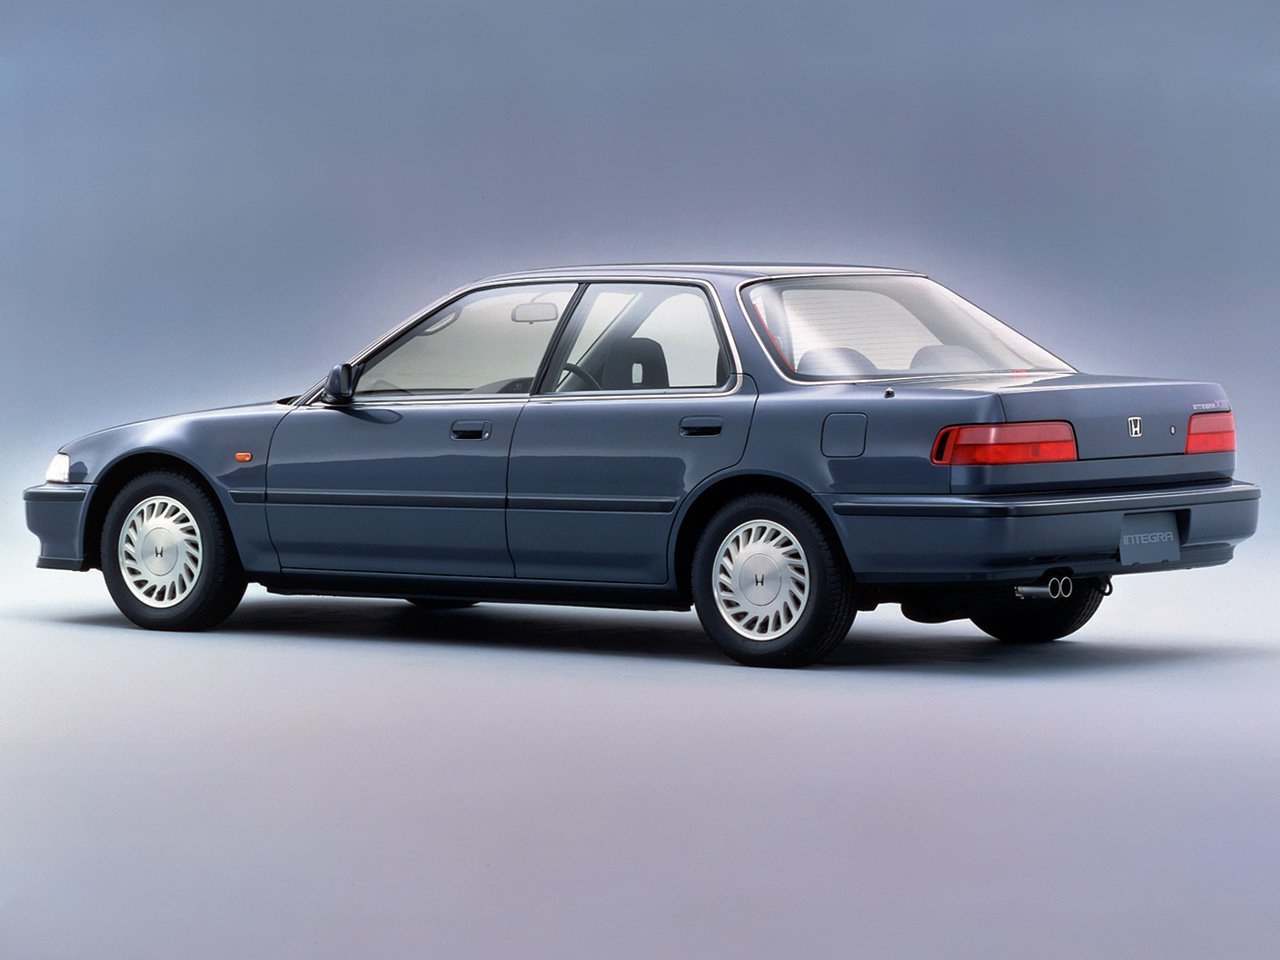 седан Honda Integra 1989 - 1993г выпуска модификация 1.6 AT (105 л.с.)